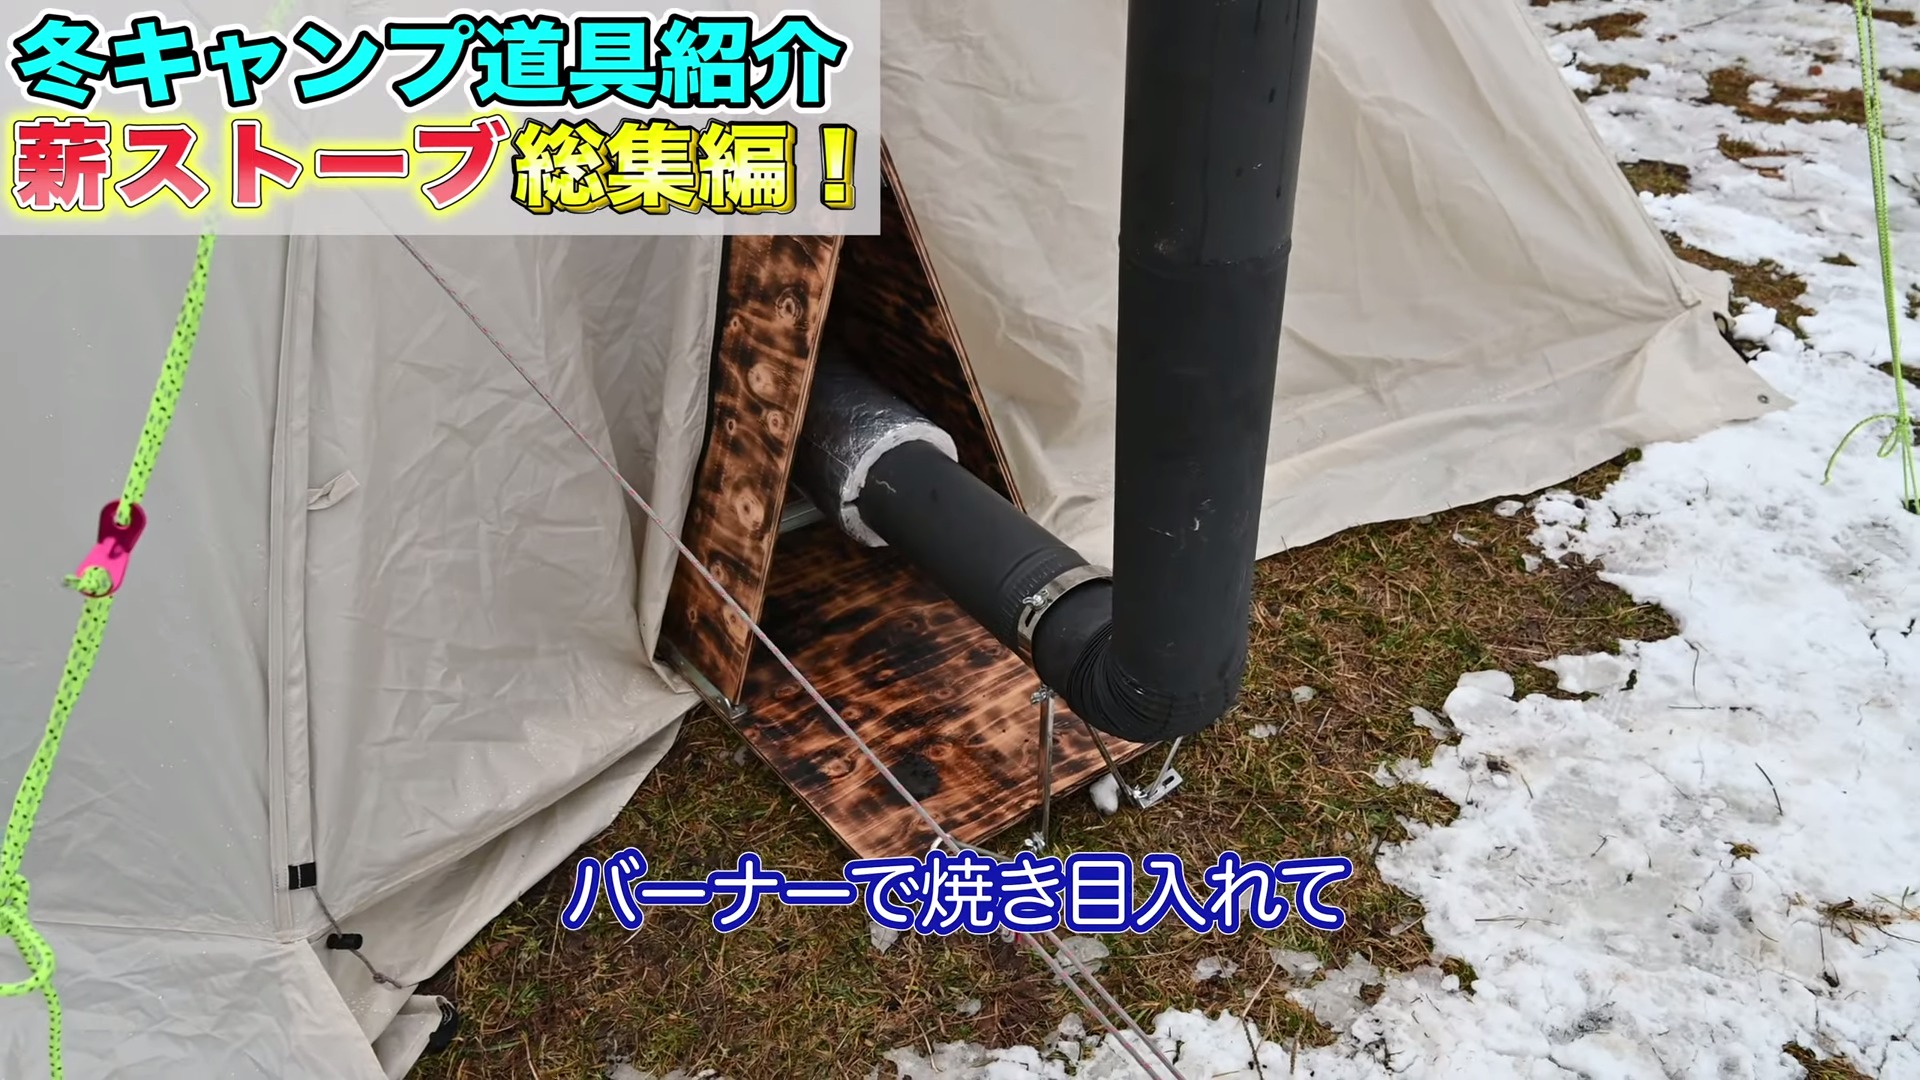 アイテムで Snow ポータブル薪ストーブ テント用セット冬キャンプ 防災 